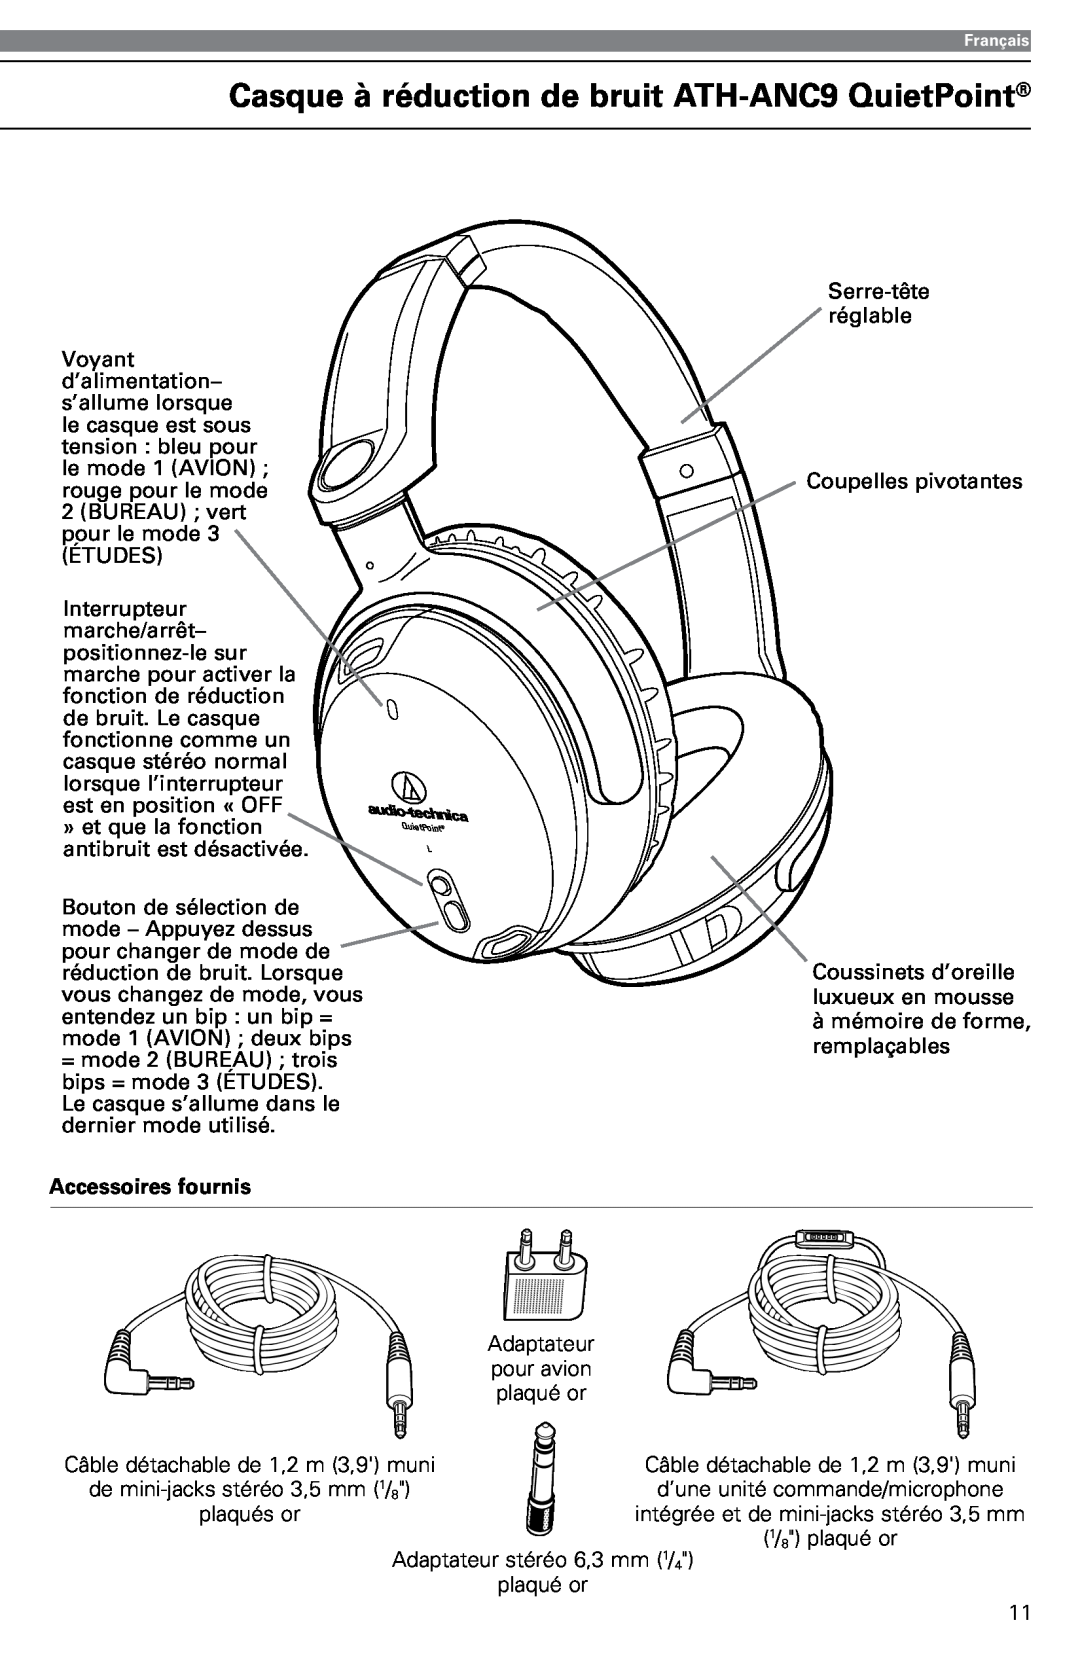 Audio-Technica instruction manual Casque à réduction de bruit ATH-ANC9QuietPoint, Accessoires fournis 